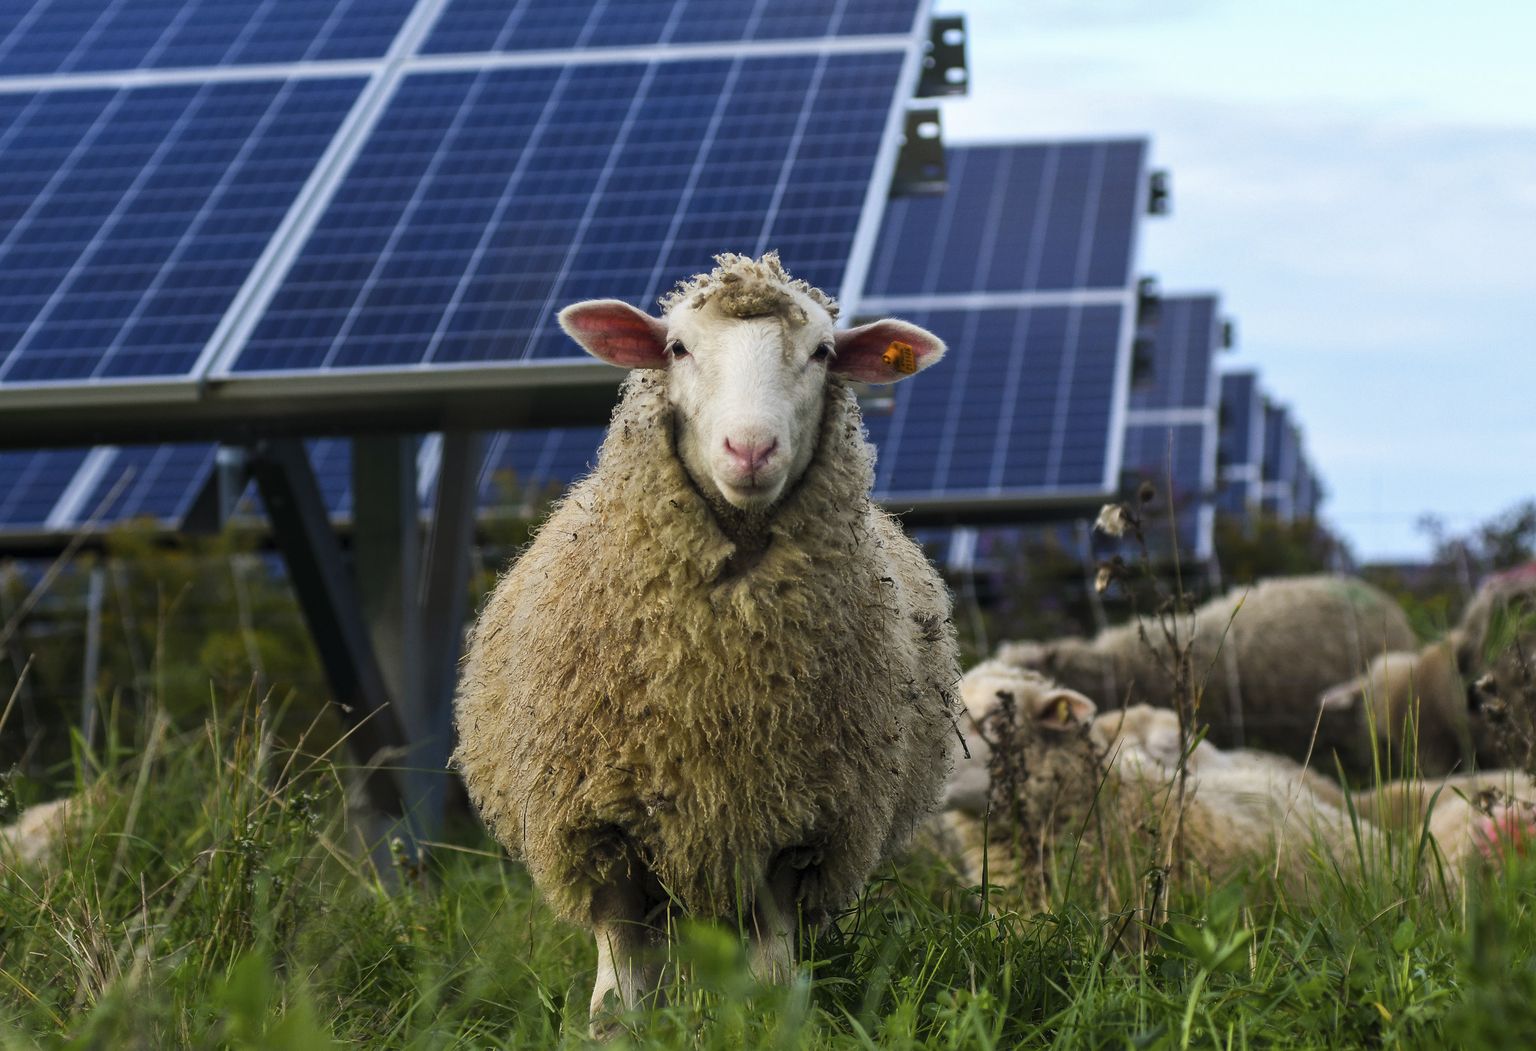 Pildil olevad lambad on küll New Yorgi osariigist, kuid ilmselt on ka nemad õnnelikumad, kui saavad päikesepaneelide varjus puhata, nagu selgus California lammastega läbi viidud teadusuuringust.